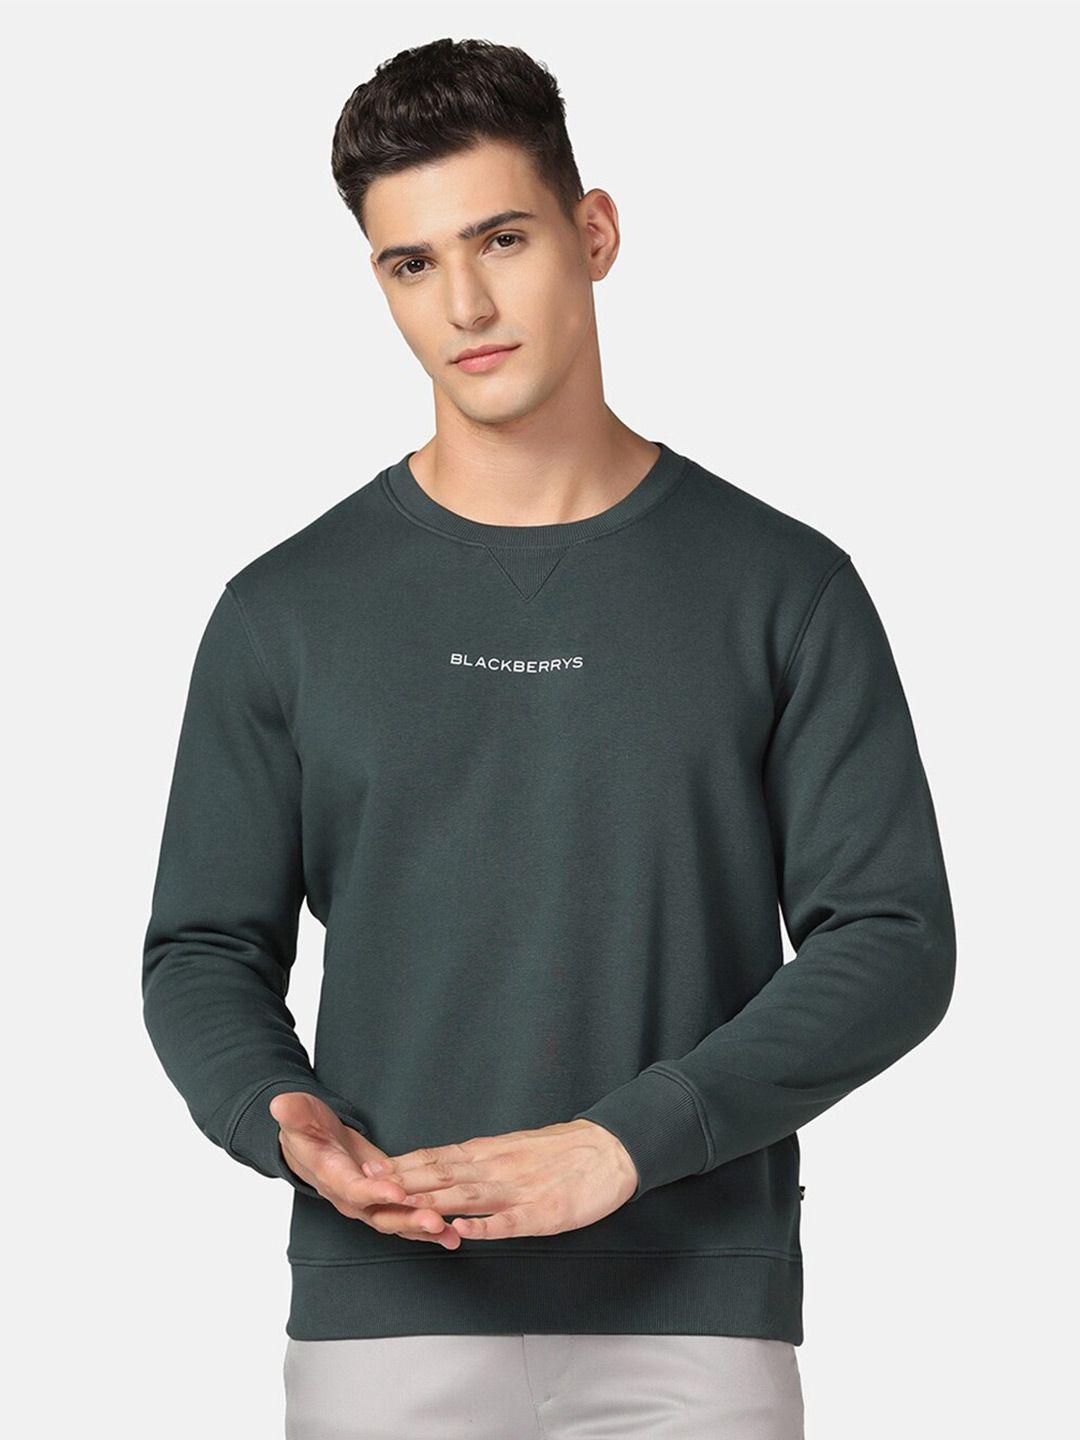 blackberrys-round-neck-cotton-sweatshirt